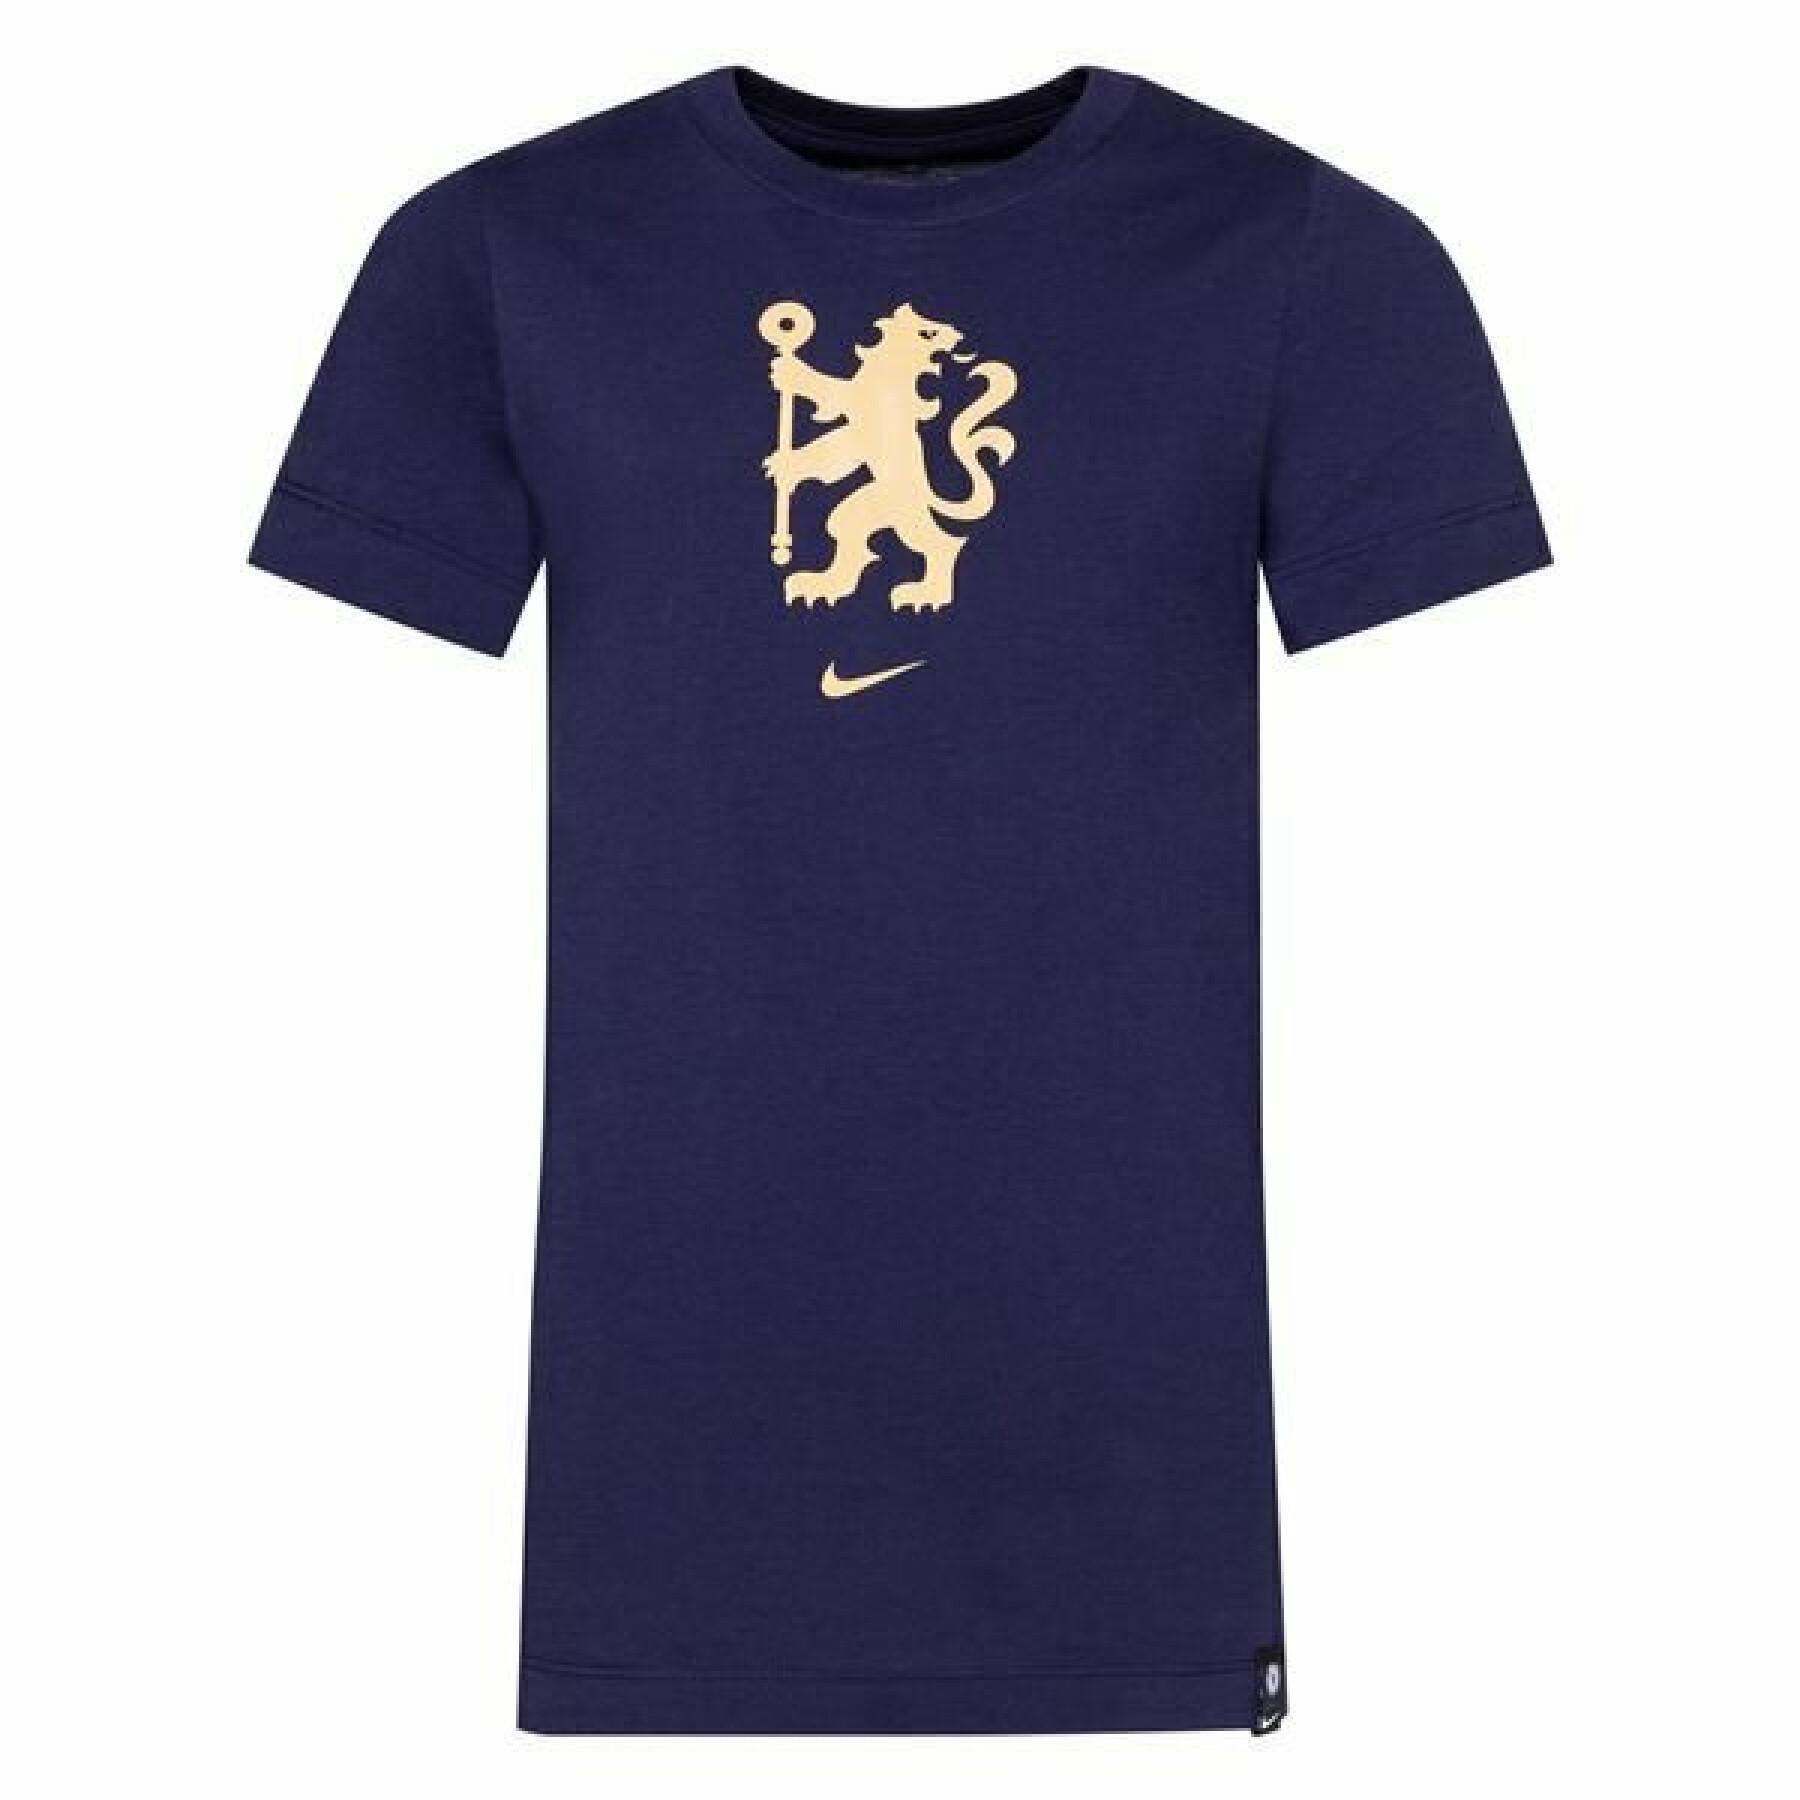 Chelsea T-shirt för barn 2021/22